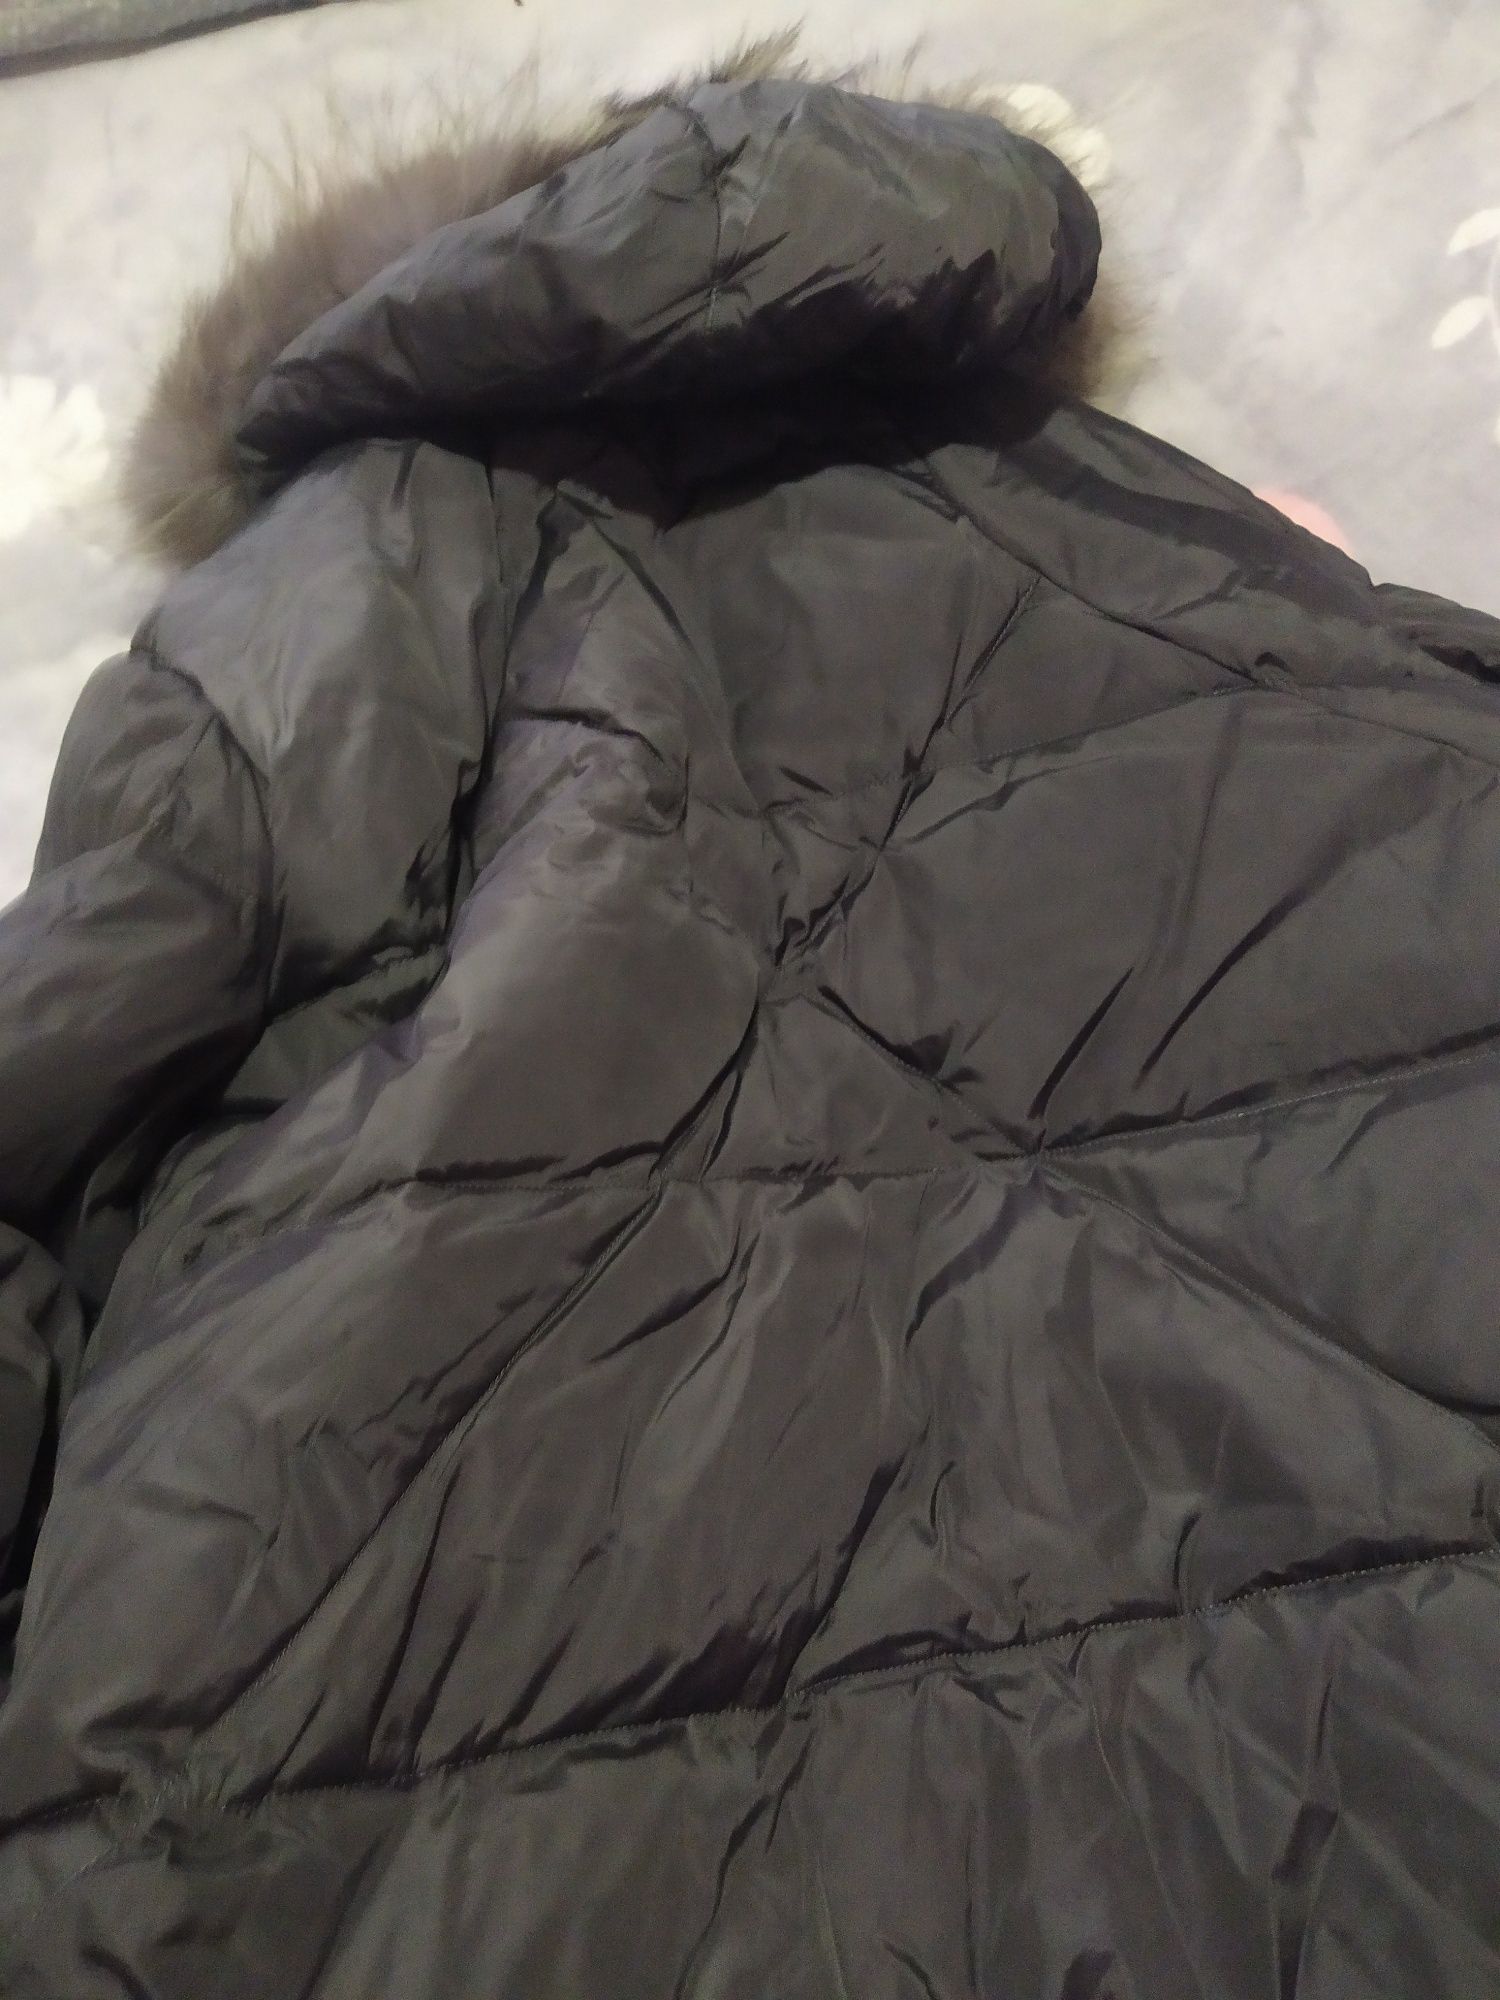 Мужская теплая куртка,размер 52